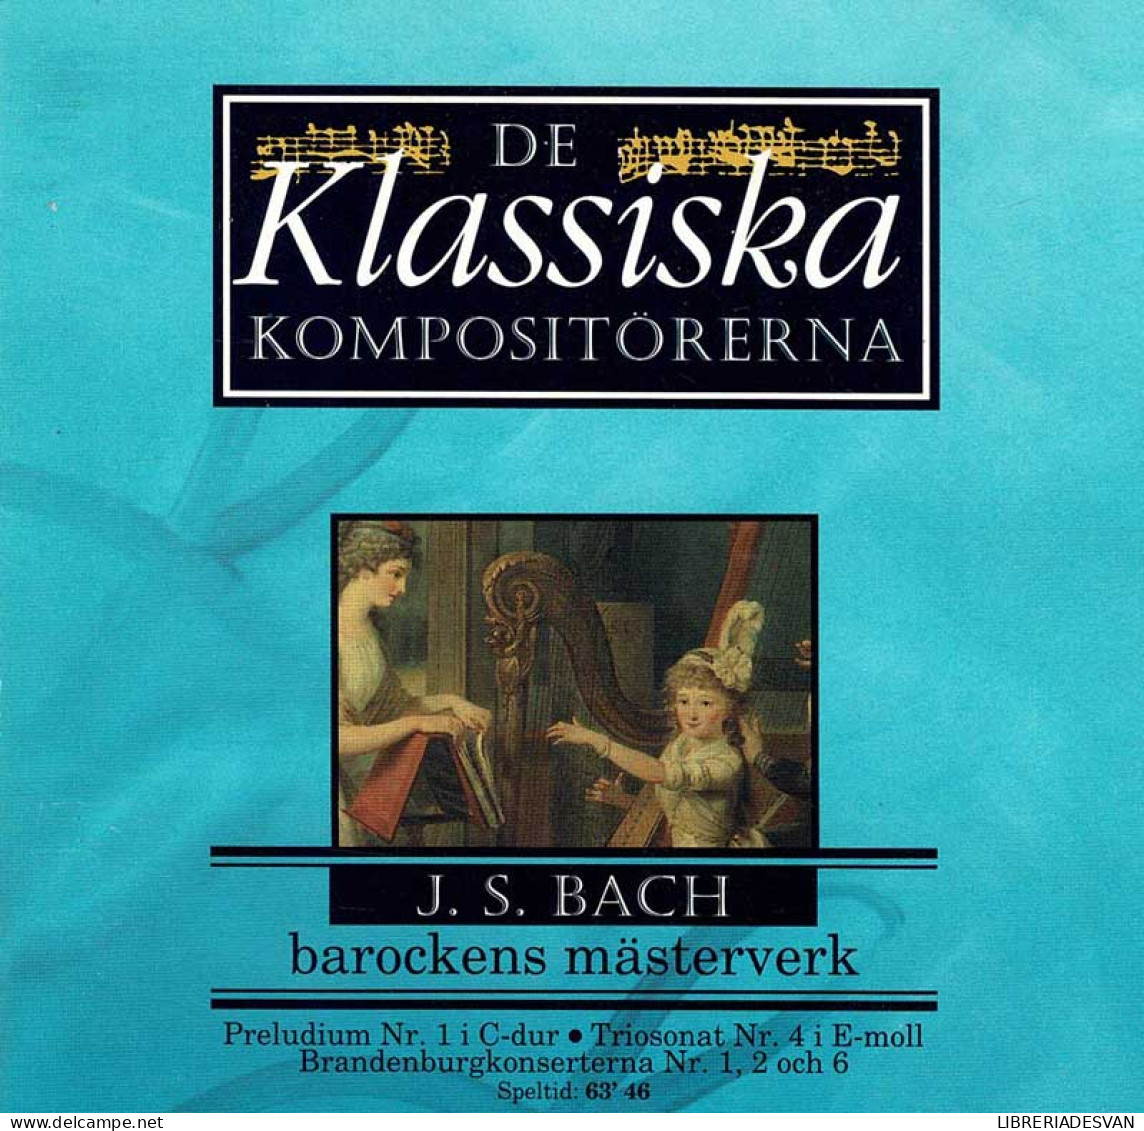 J. S. Bach - Barockens Mästerverk. CD - Classica